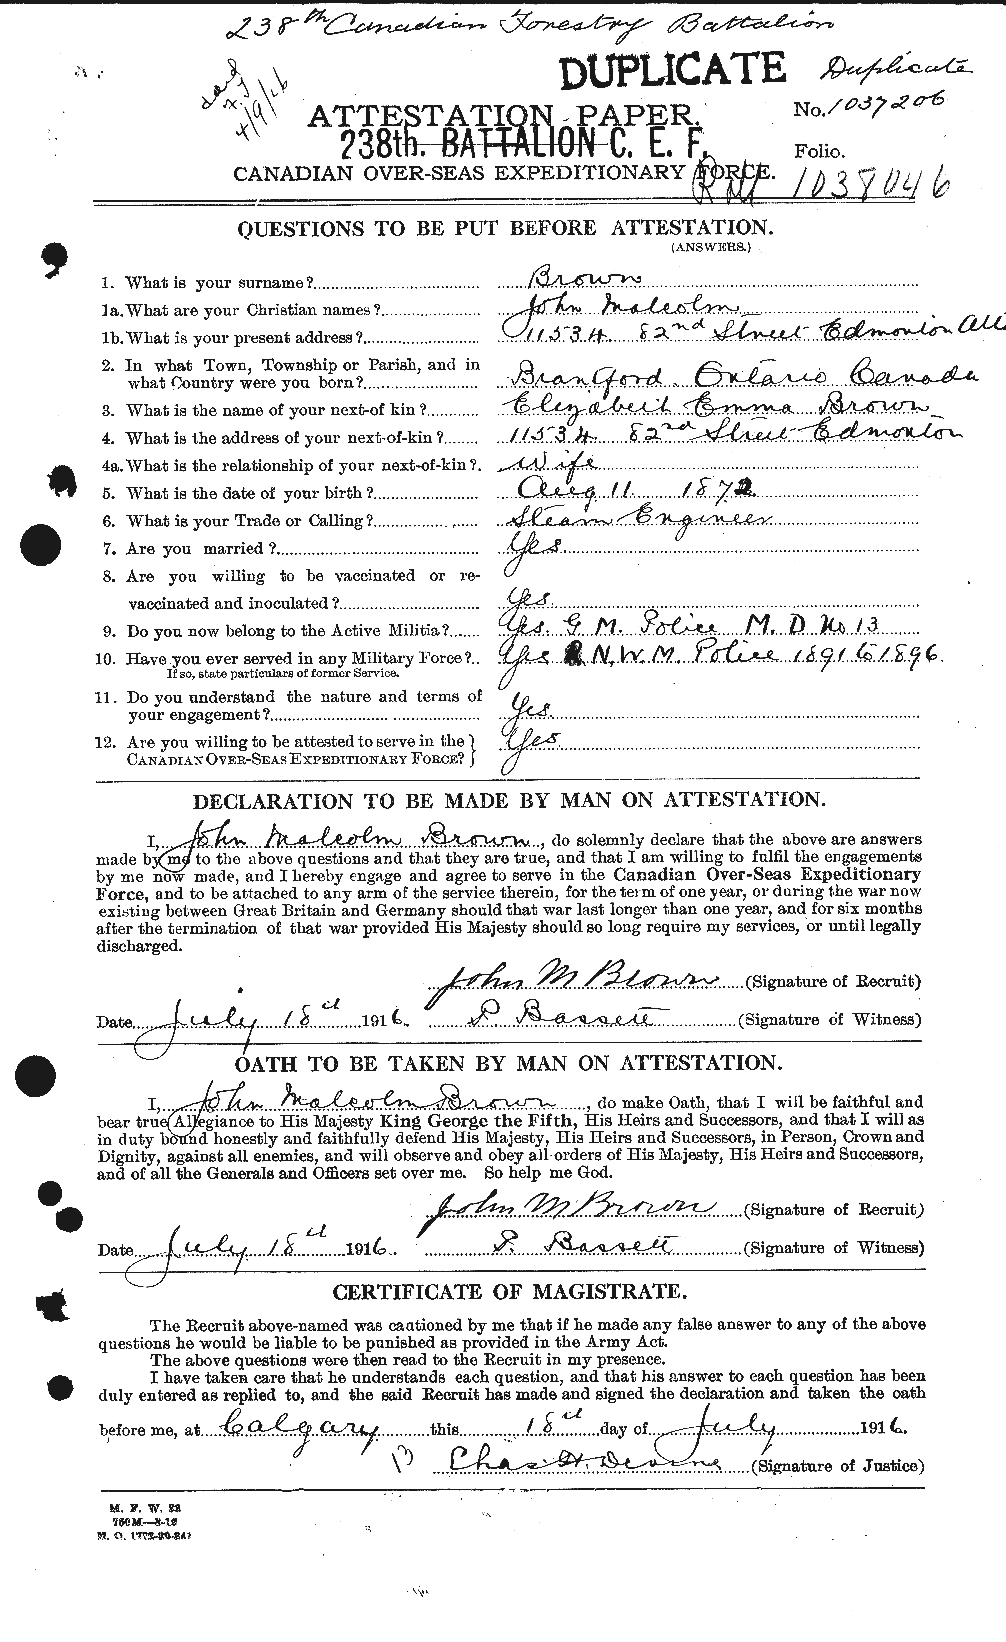 Dossiers du Personnel de la Première Guerre mondiale - CEC 265833a